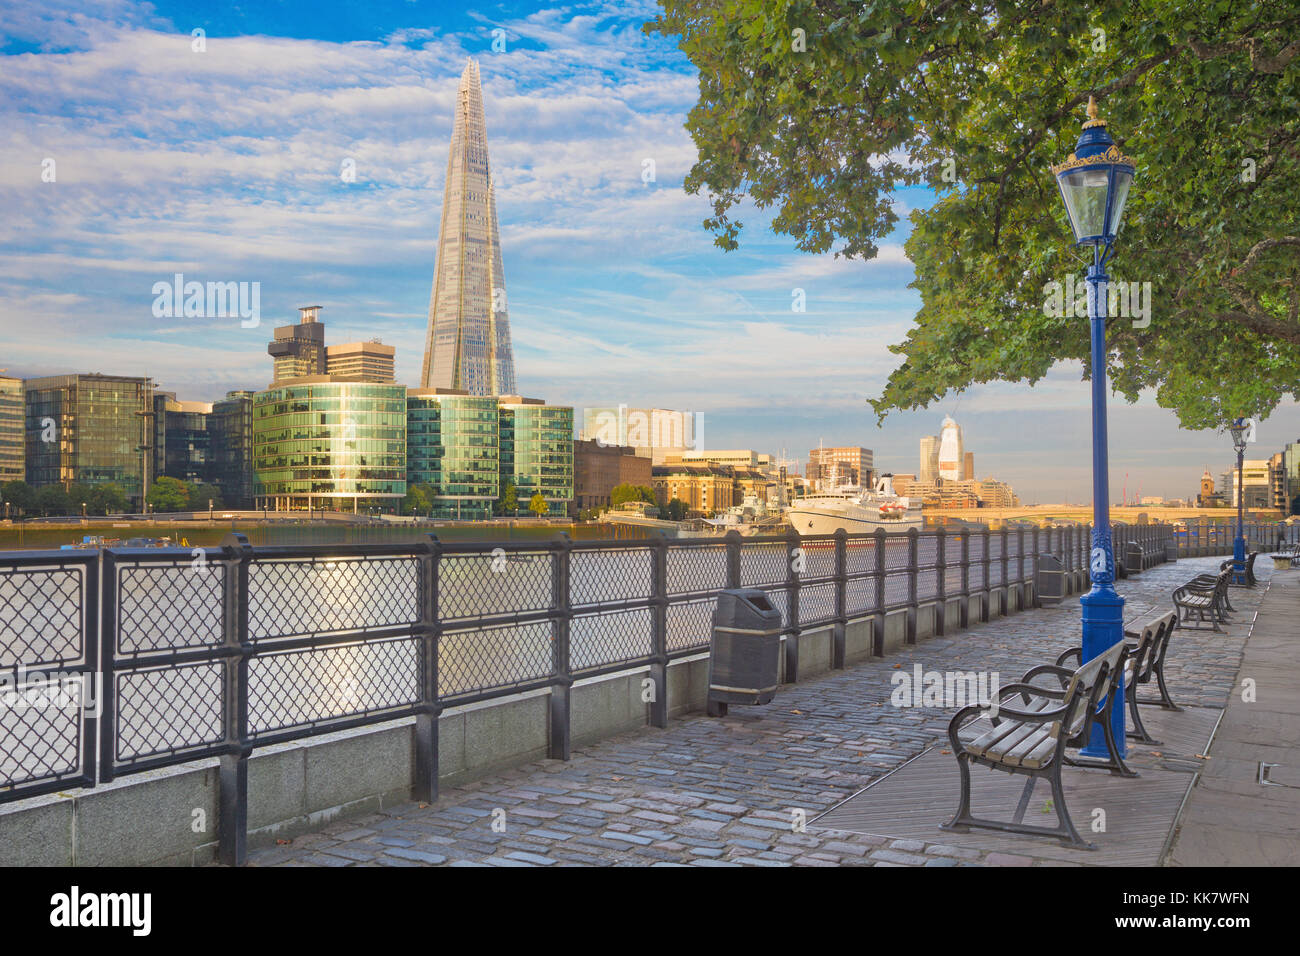 Promenade london sunrise uk hi-res stock photography and images - Alamy